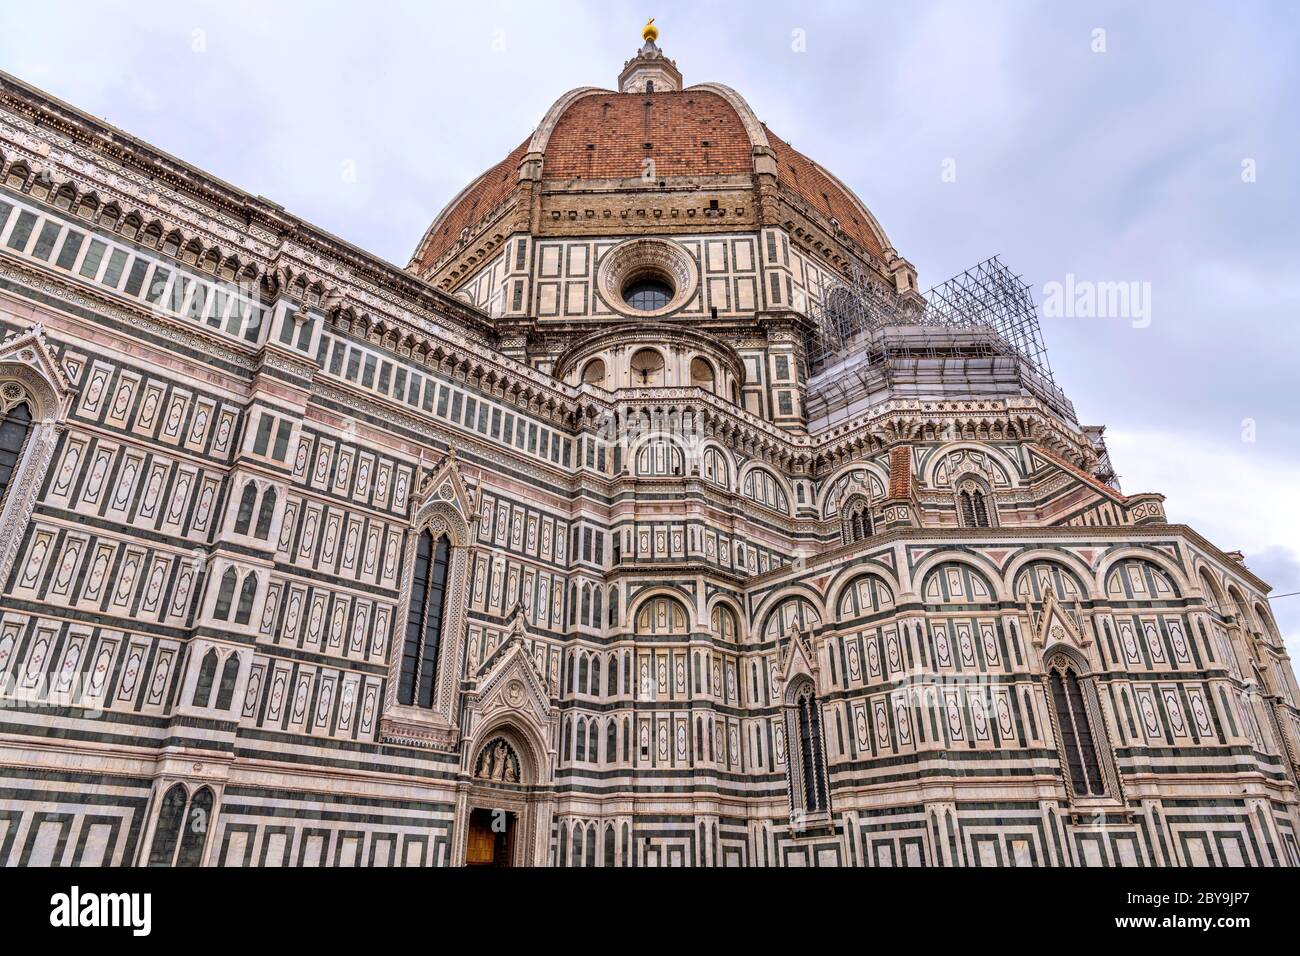 Cathédrale de Florence - VUE rapprochée à angle bas du dôme et du mur extérieur sud de la cathédrale de Florence, au cœur de Florence, en Toscane, en Italie. Banque D'Images